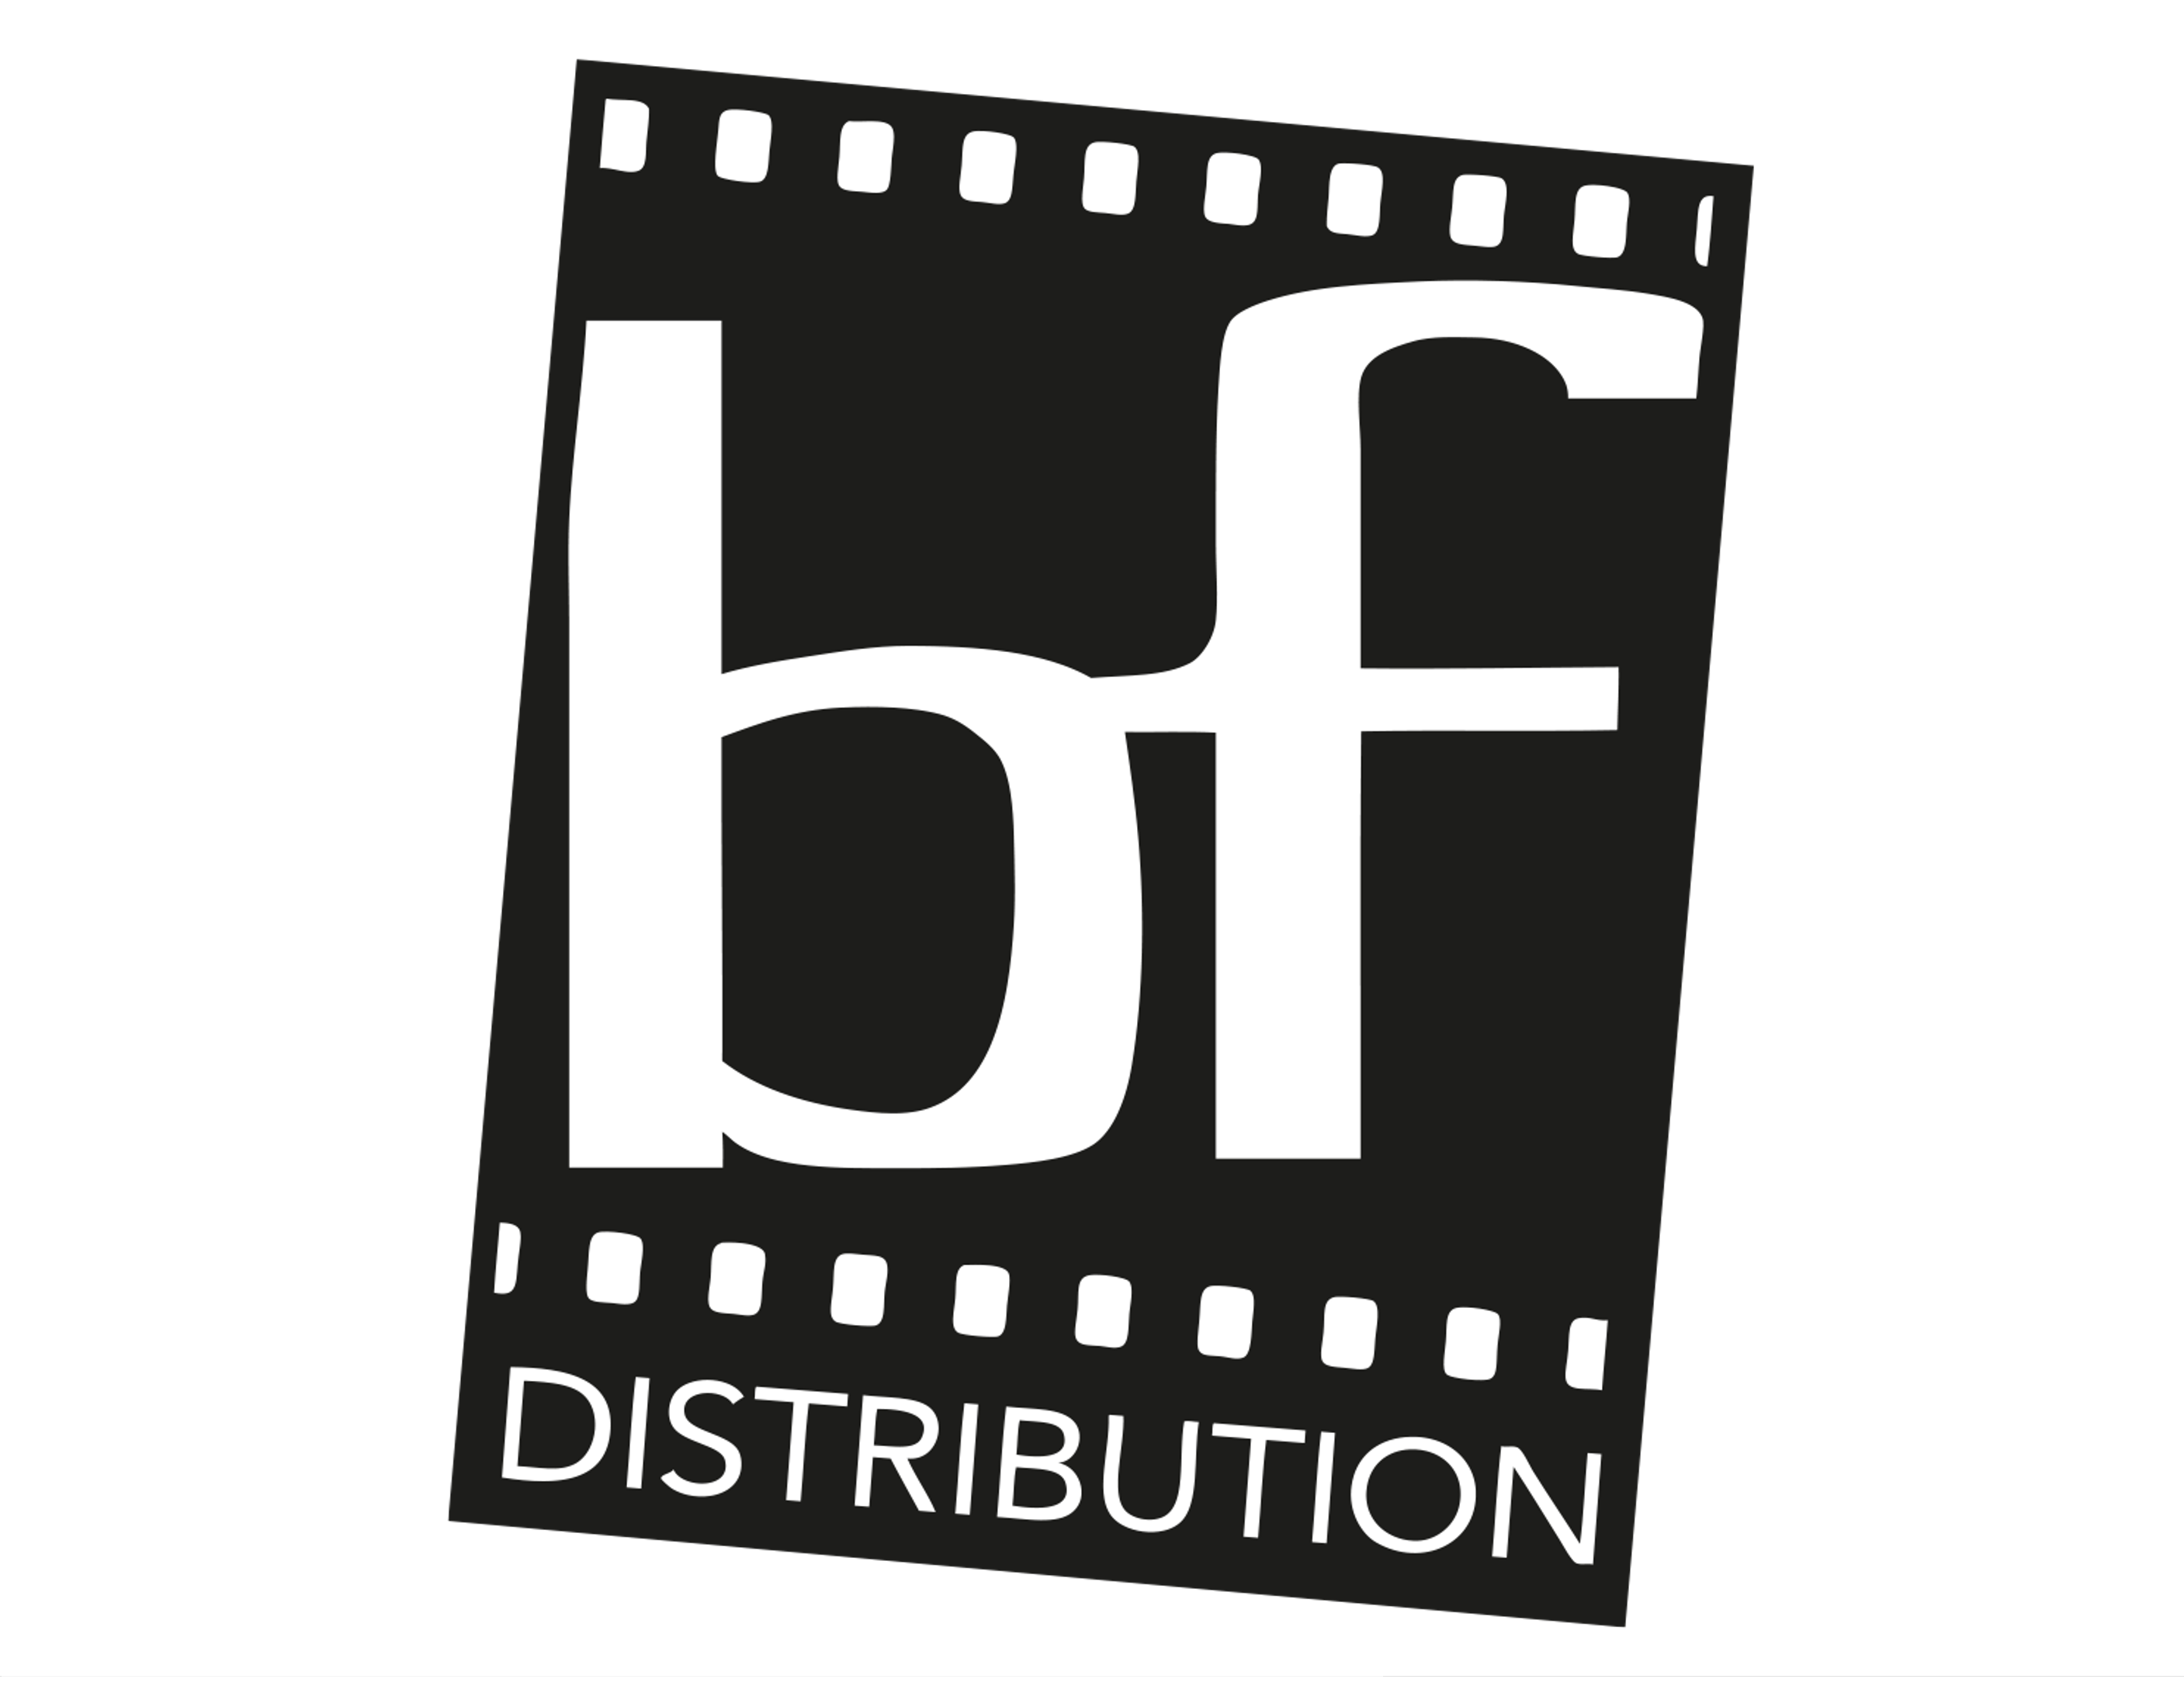 BF Distribution